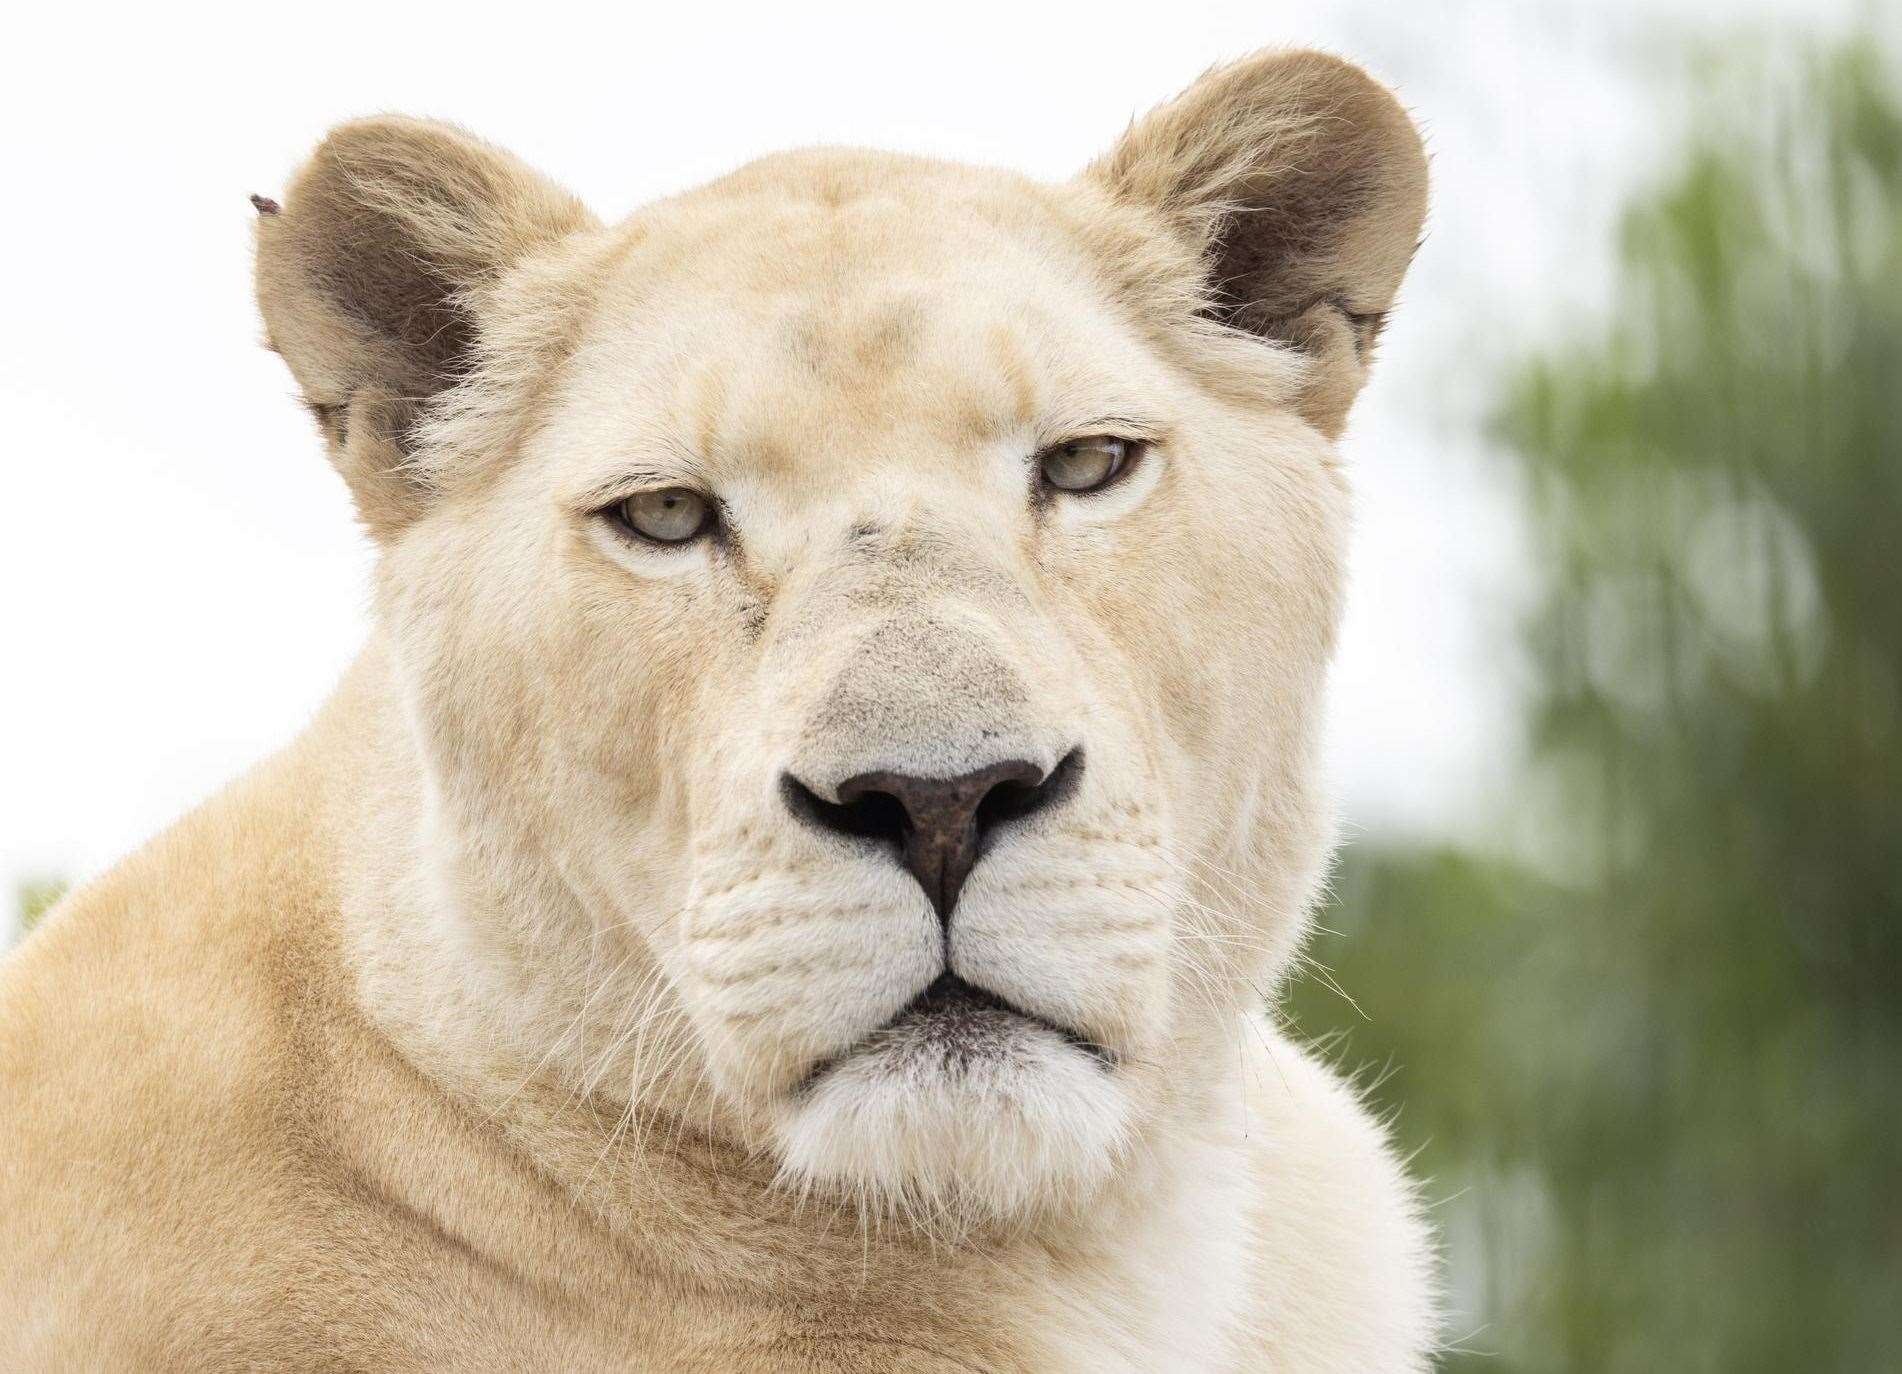 The Big Cat Sanctuary's white lioness Imara has died. Picture: The Big Cat Sanctuary